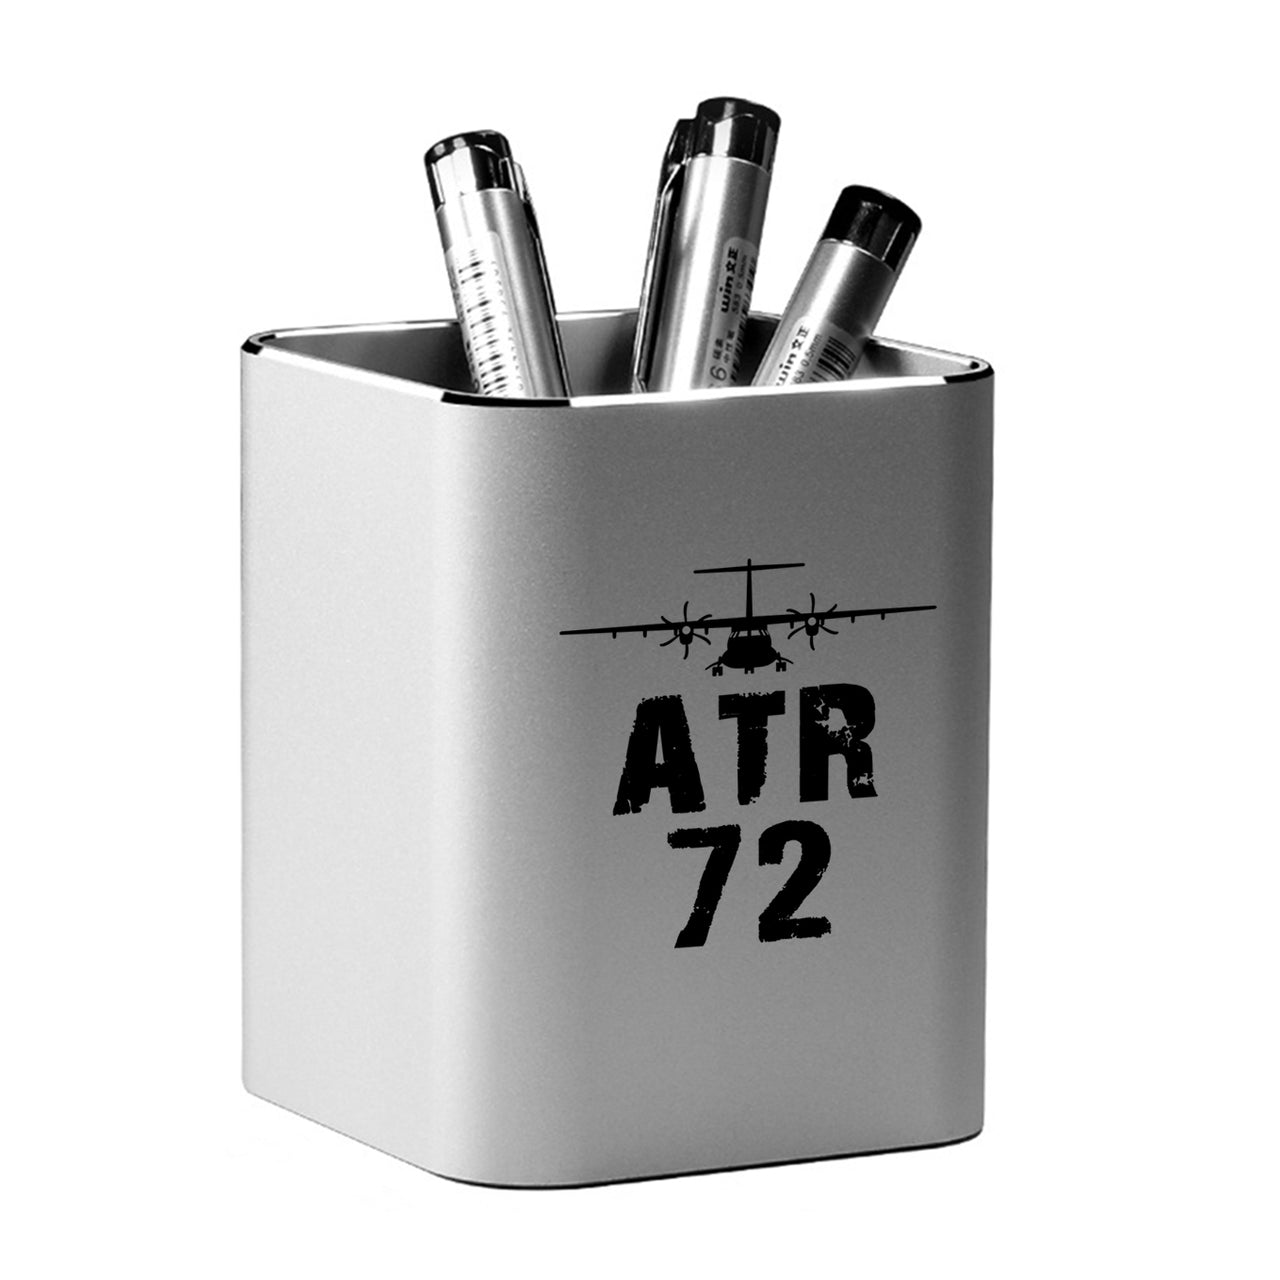 ATR-72 & Plane Designed Aluminium Alloy Pen Holders